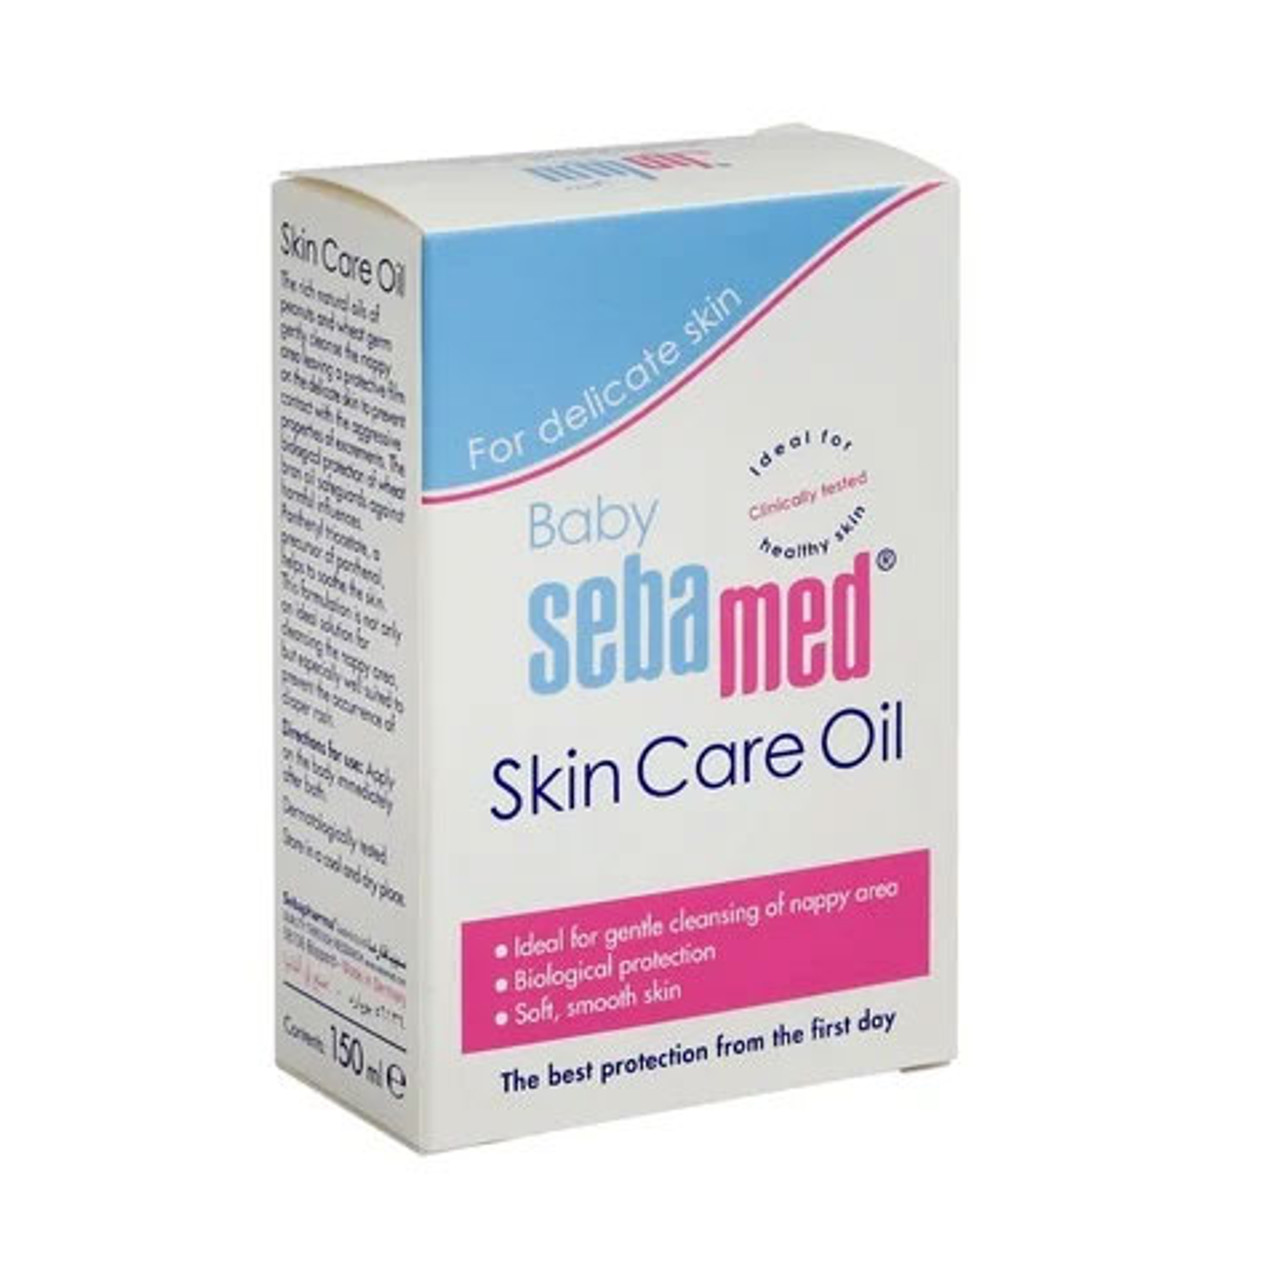 skin care oil sebamed